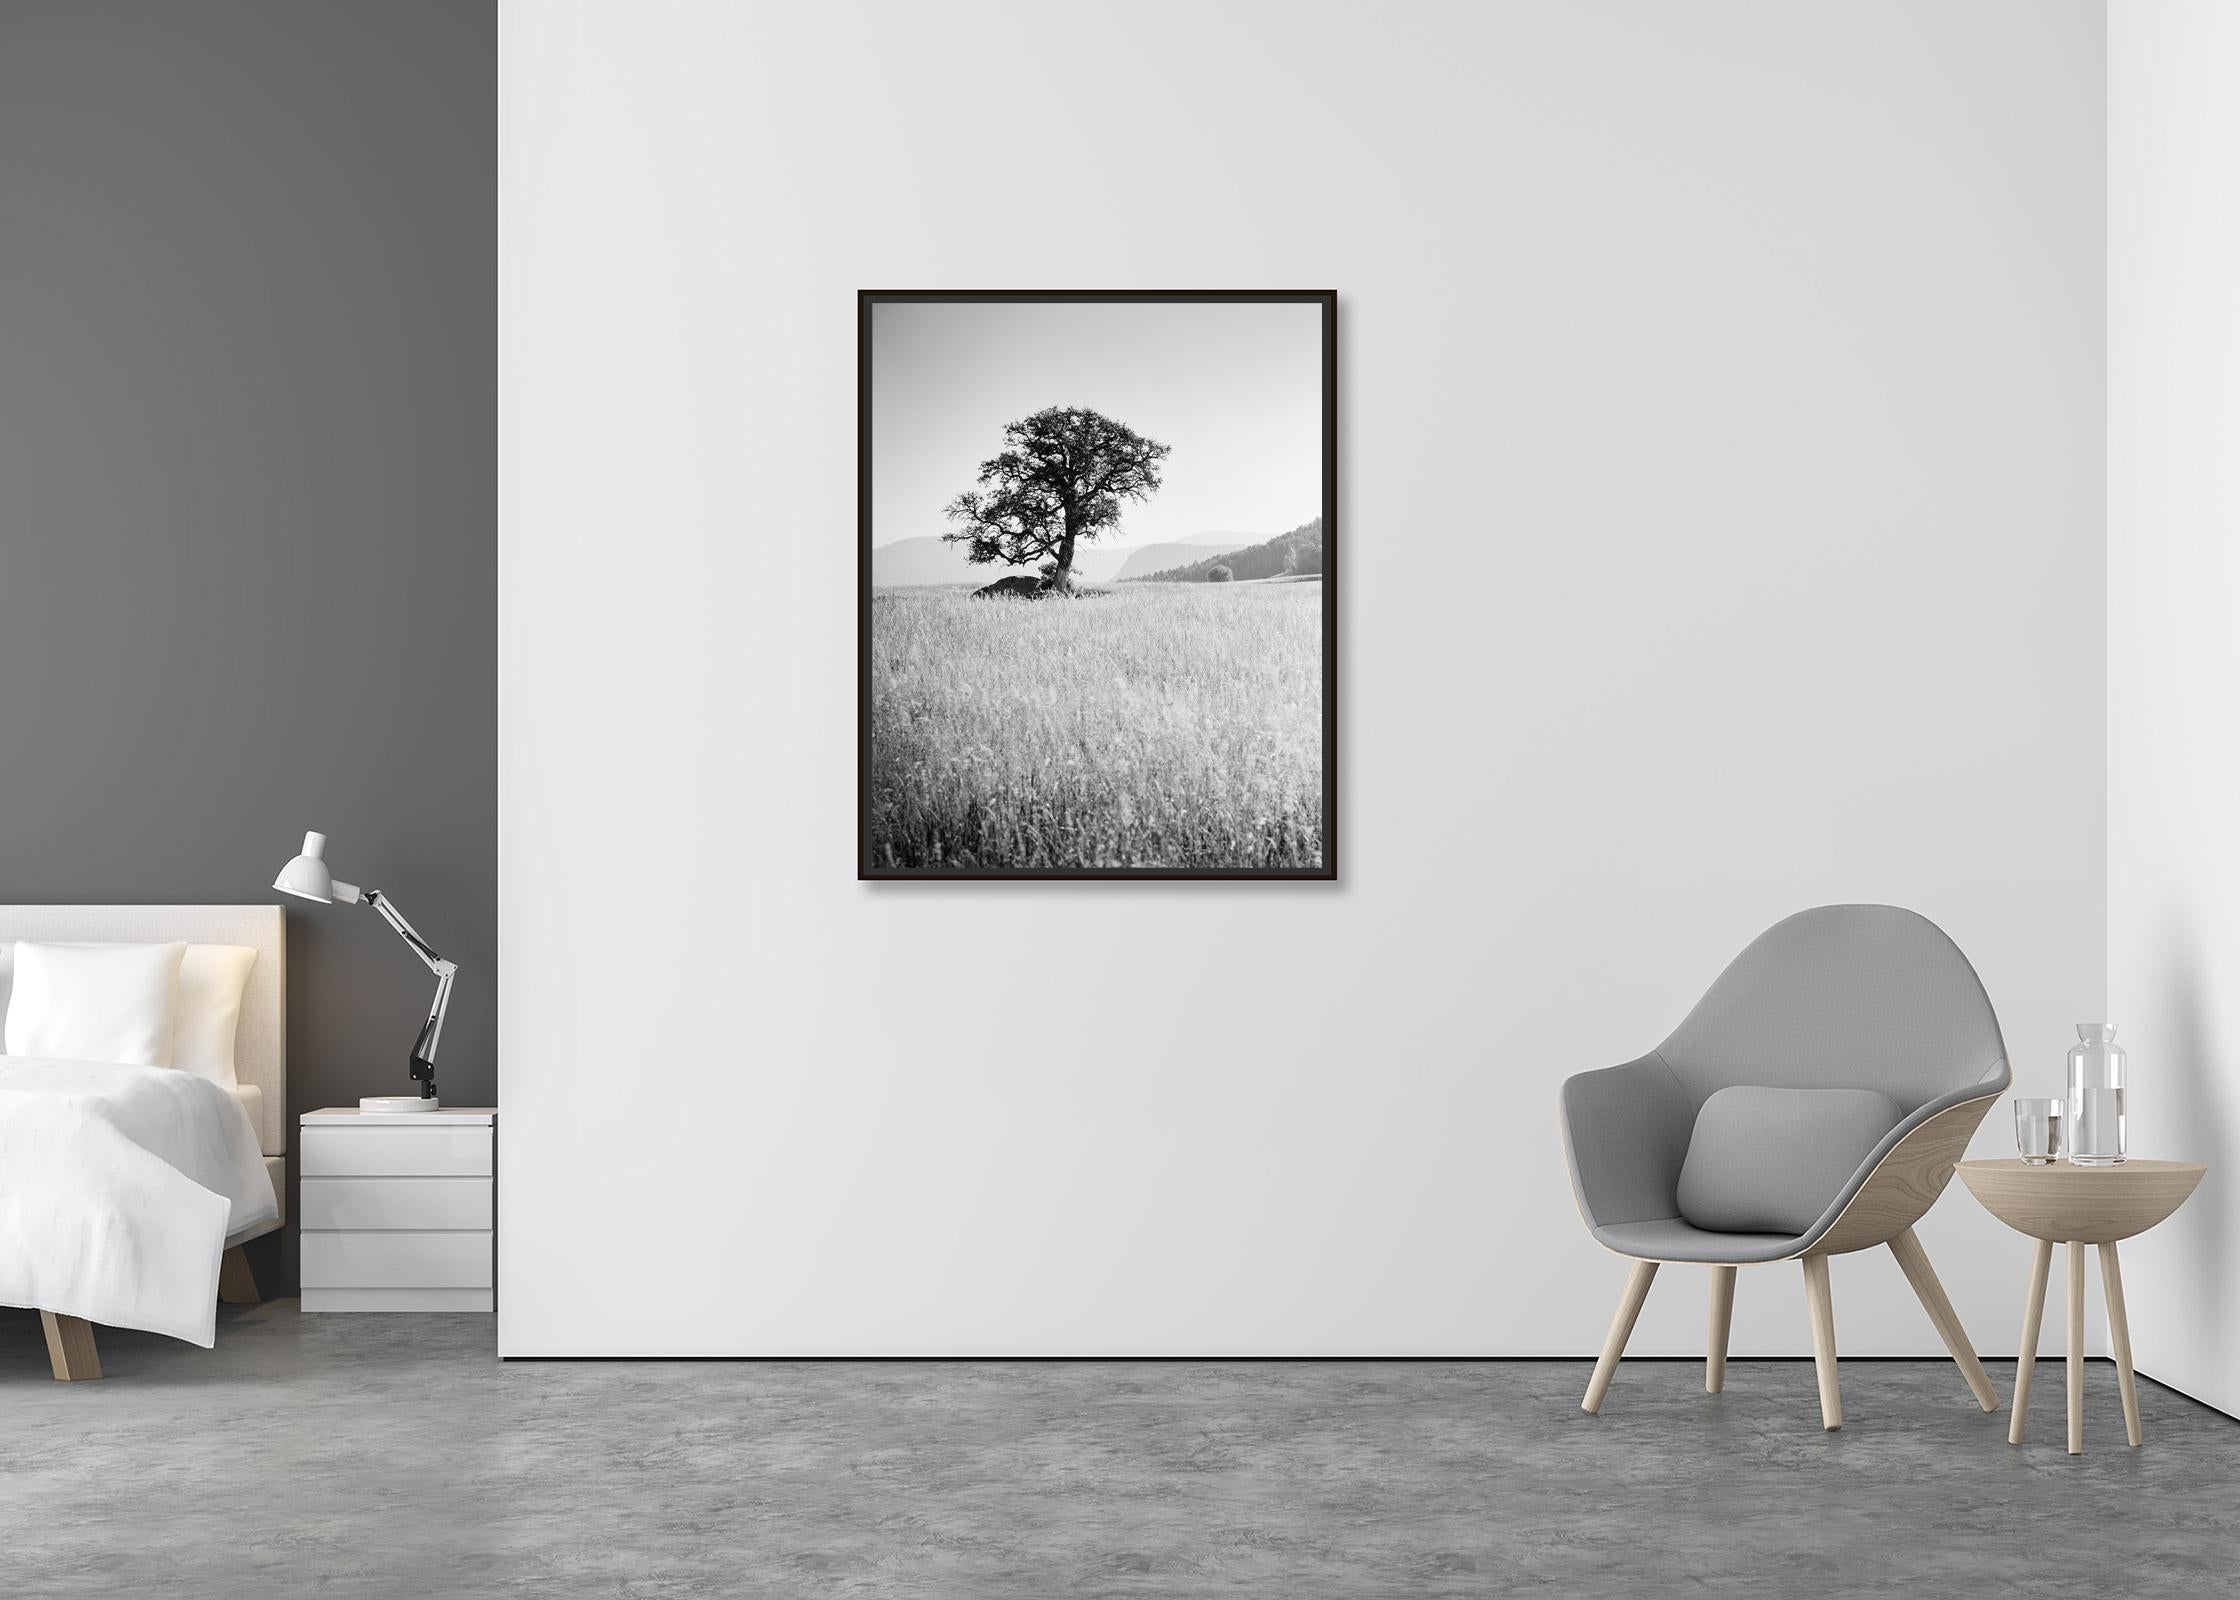 Morning Sun, ein einzelner Baum, Seiser Alm, Schwarz-Weiß-Landschaft, Kunstfotografie (Zeitgenössisch), Photograph, von Gerald Berghammer